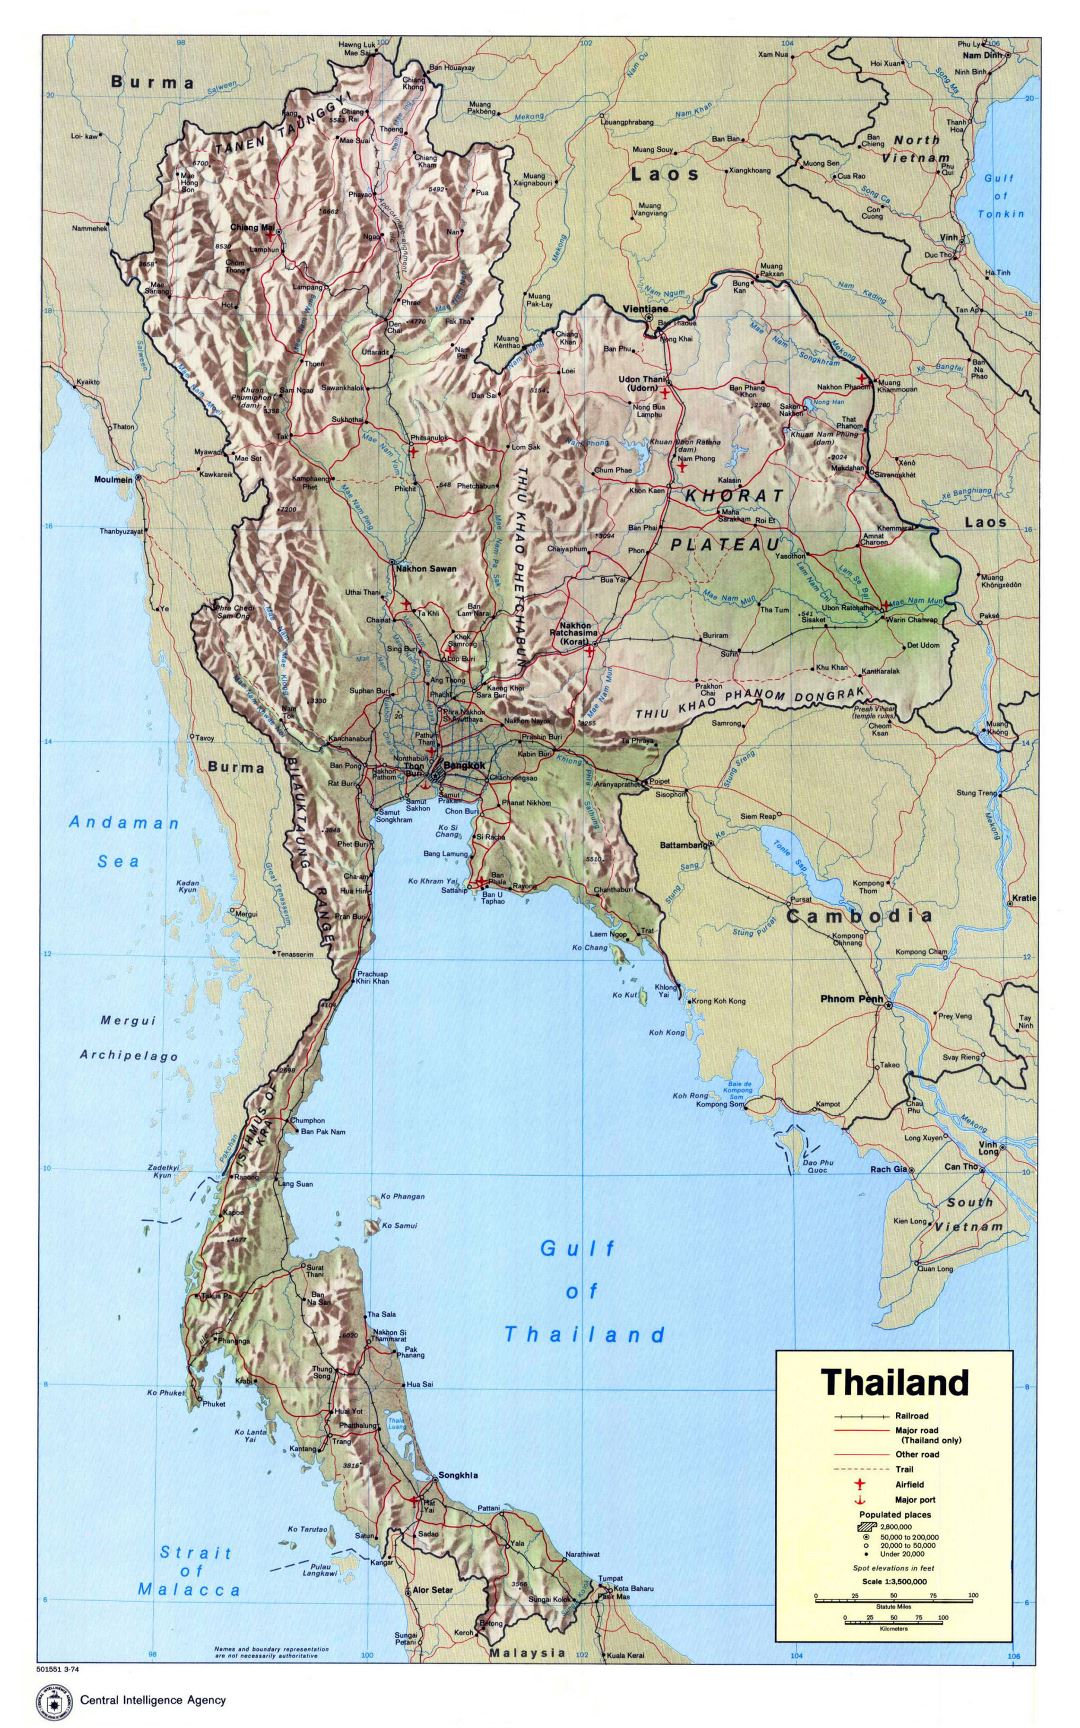 Grande detallado mapa político de Tailandia con socorro, carreteras, ferrocarriles, principales ciudades, aeropuertos y puertos marítimos - 1974